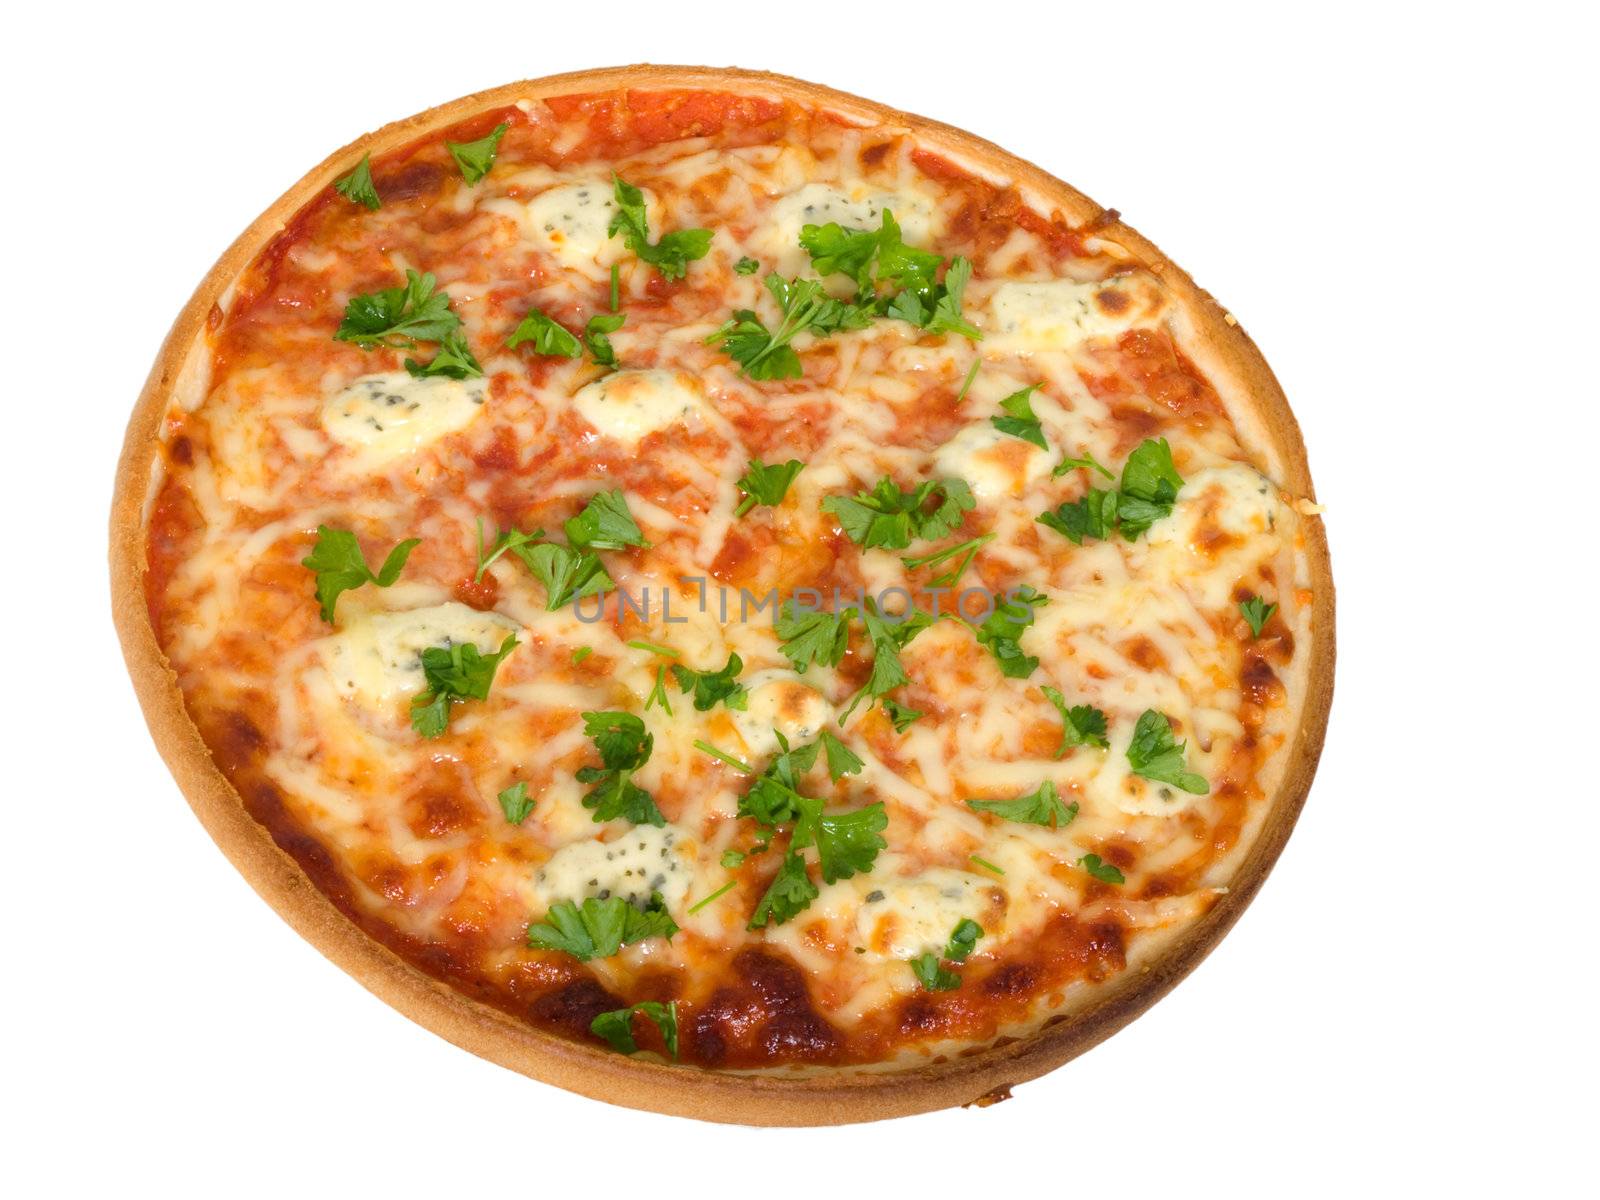  Pizza on white background by motorolka